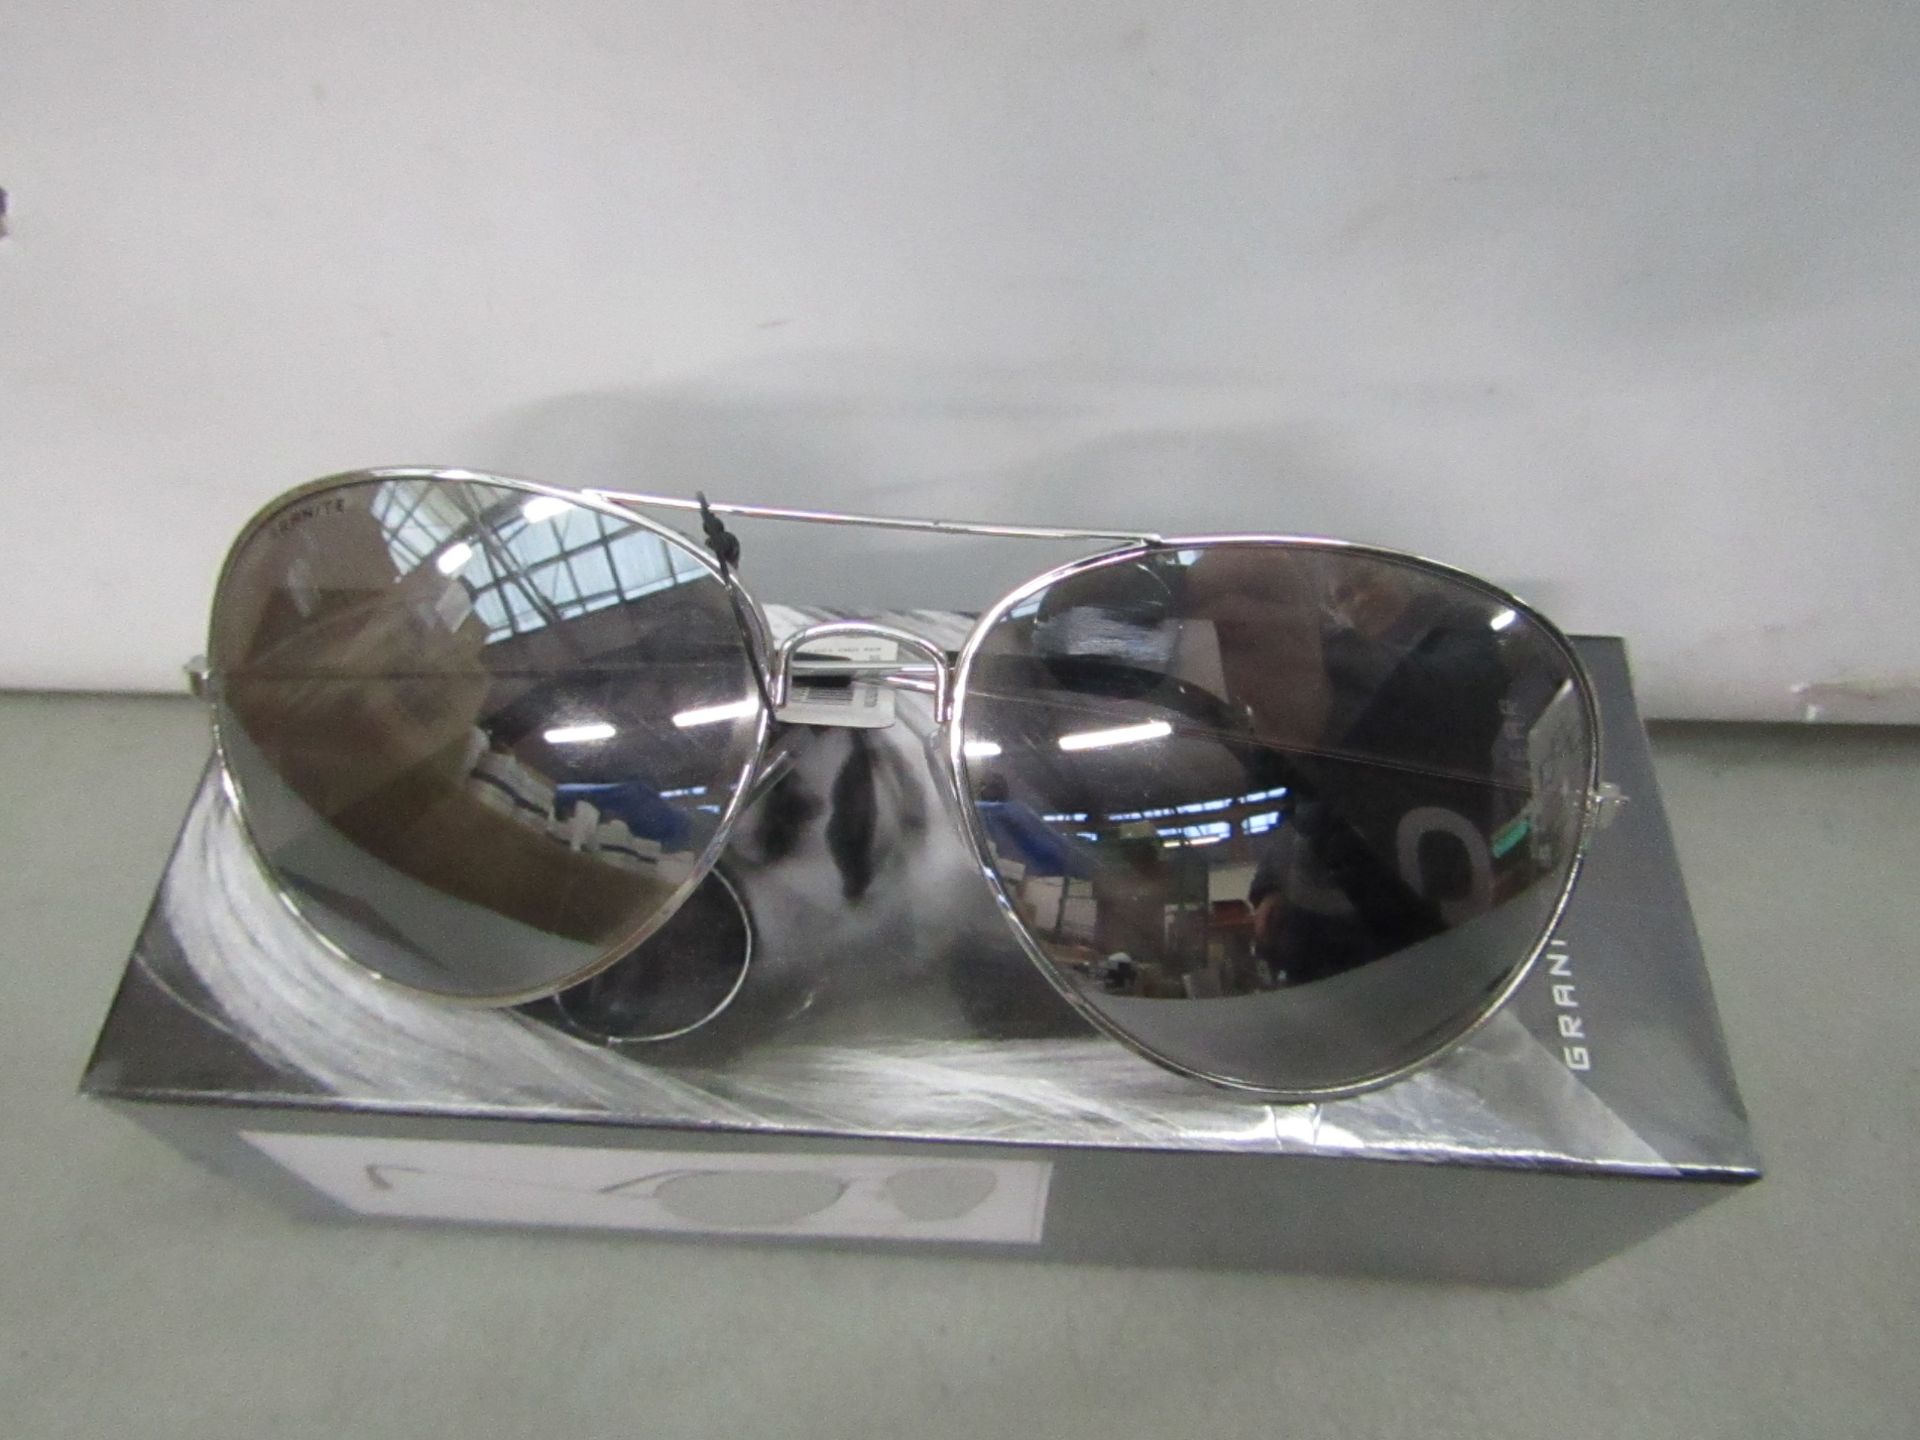 Granite Aviator style mirrored Sunglasses, new and boxed.